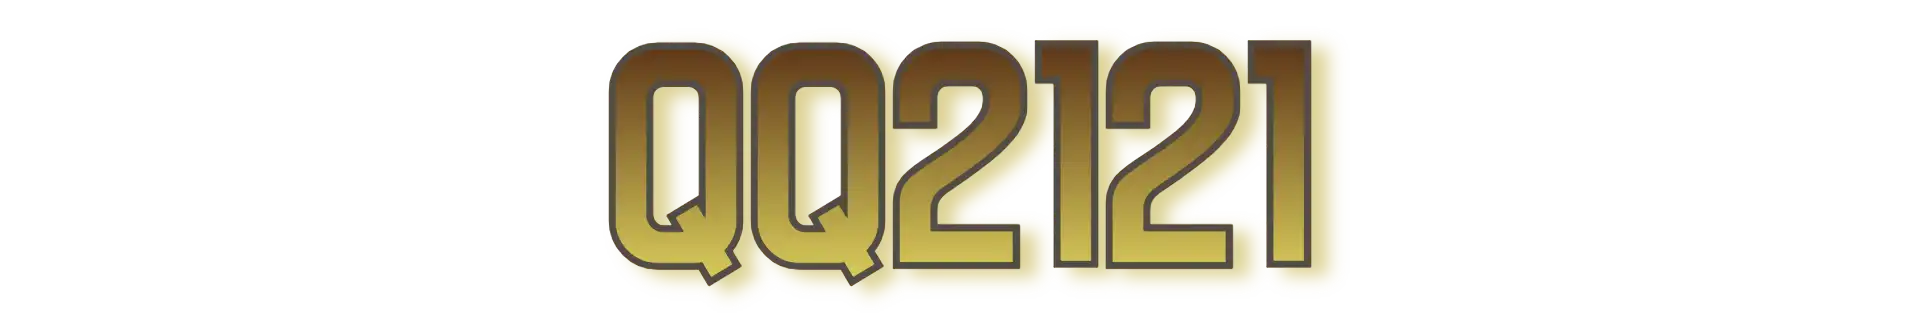 QQ2121